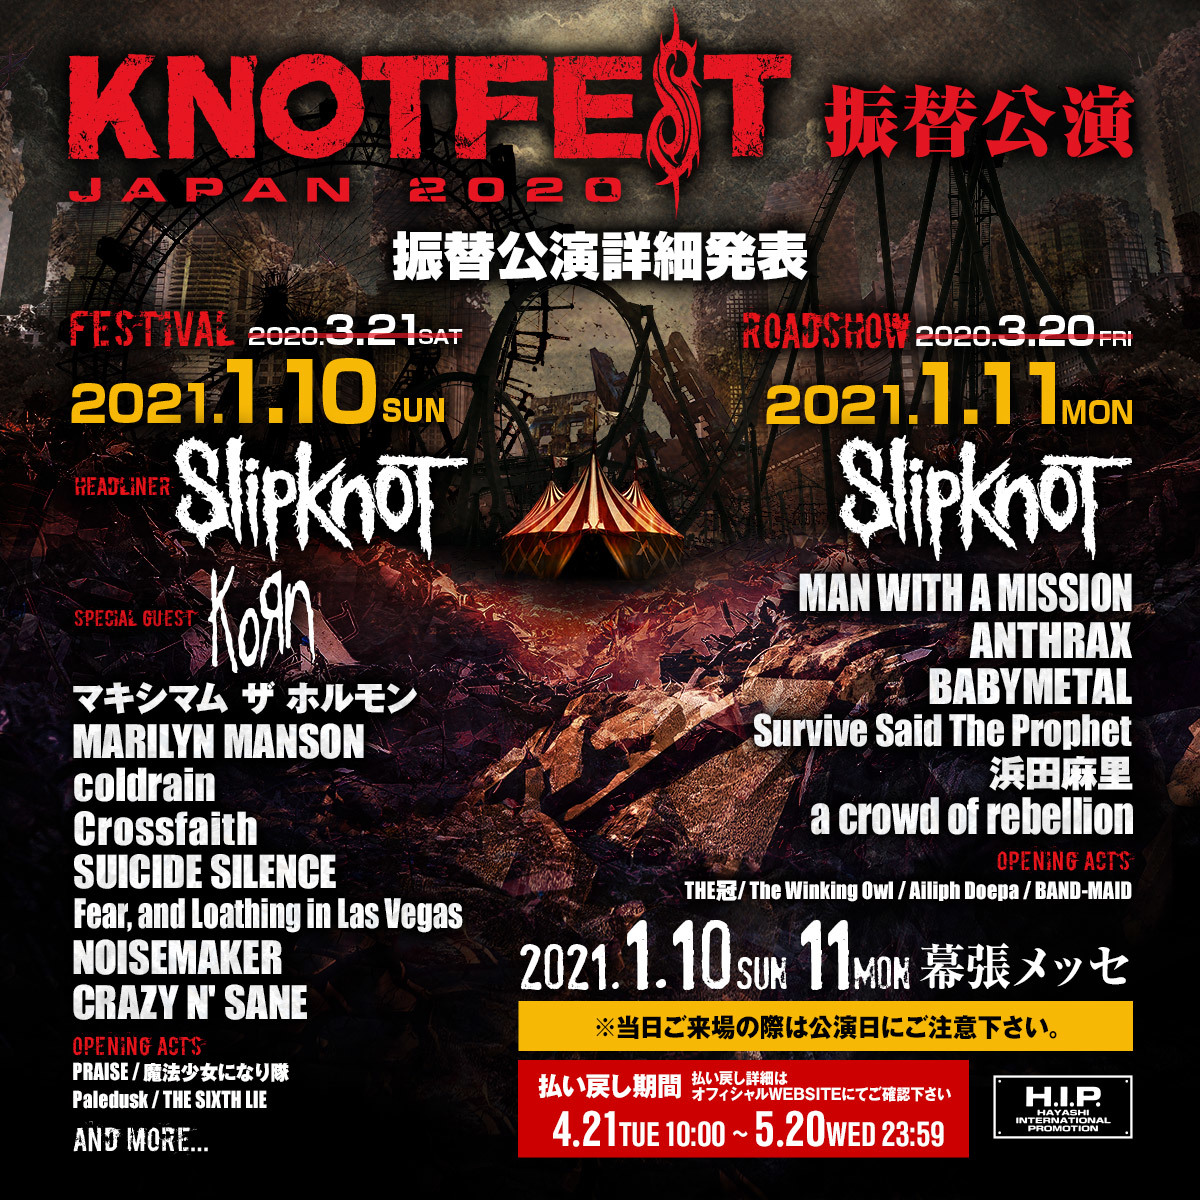 『KNOTFEST JAPAN 2020』